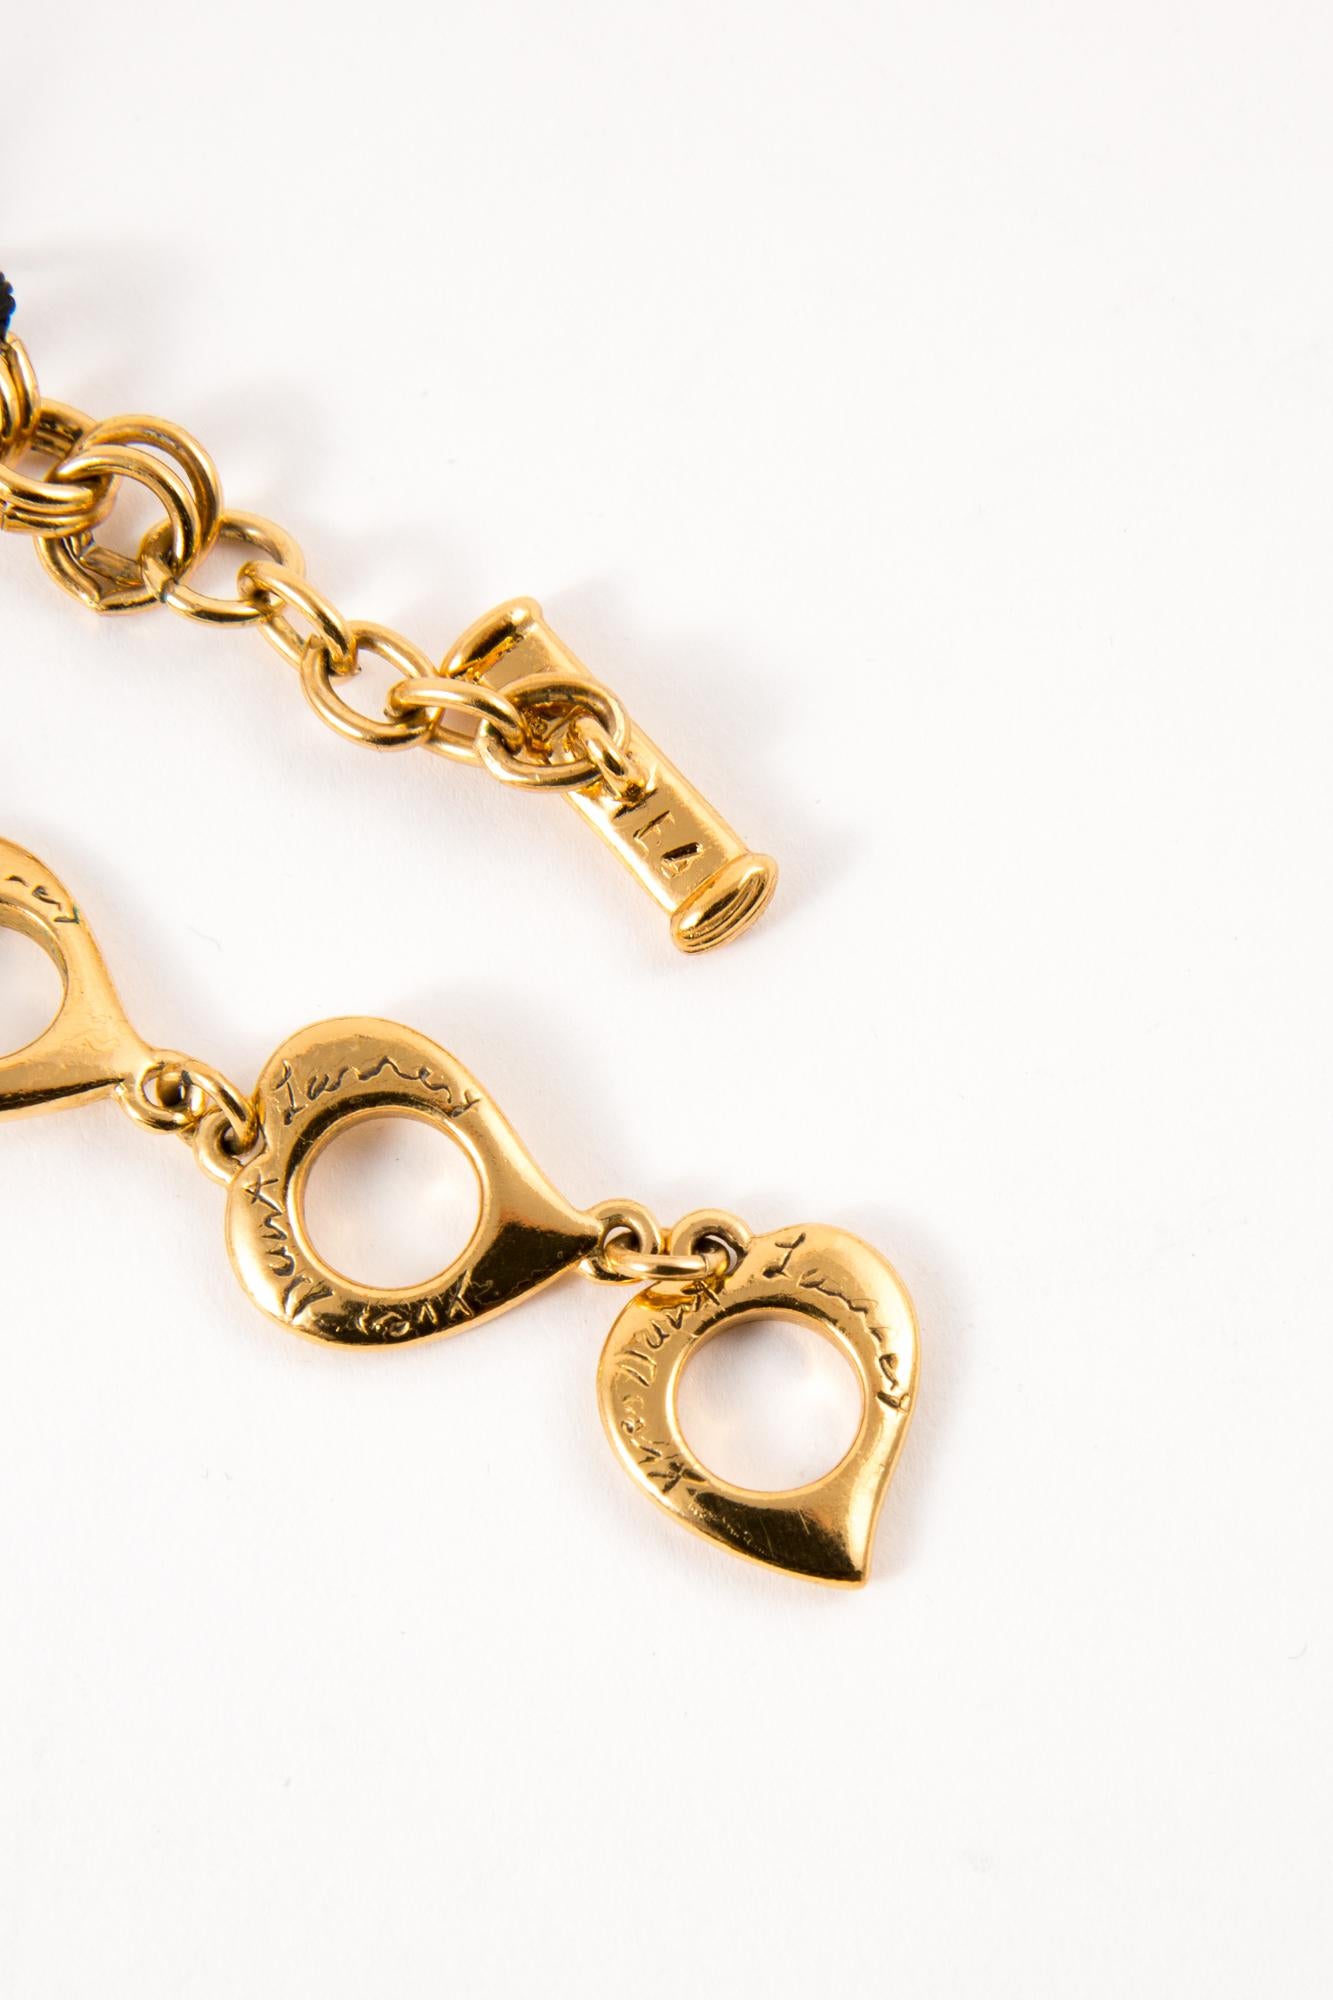 Women's  1980s Yves Saint Laurent  YSL Gold Tone Multicolor Stones Necklace   